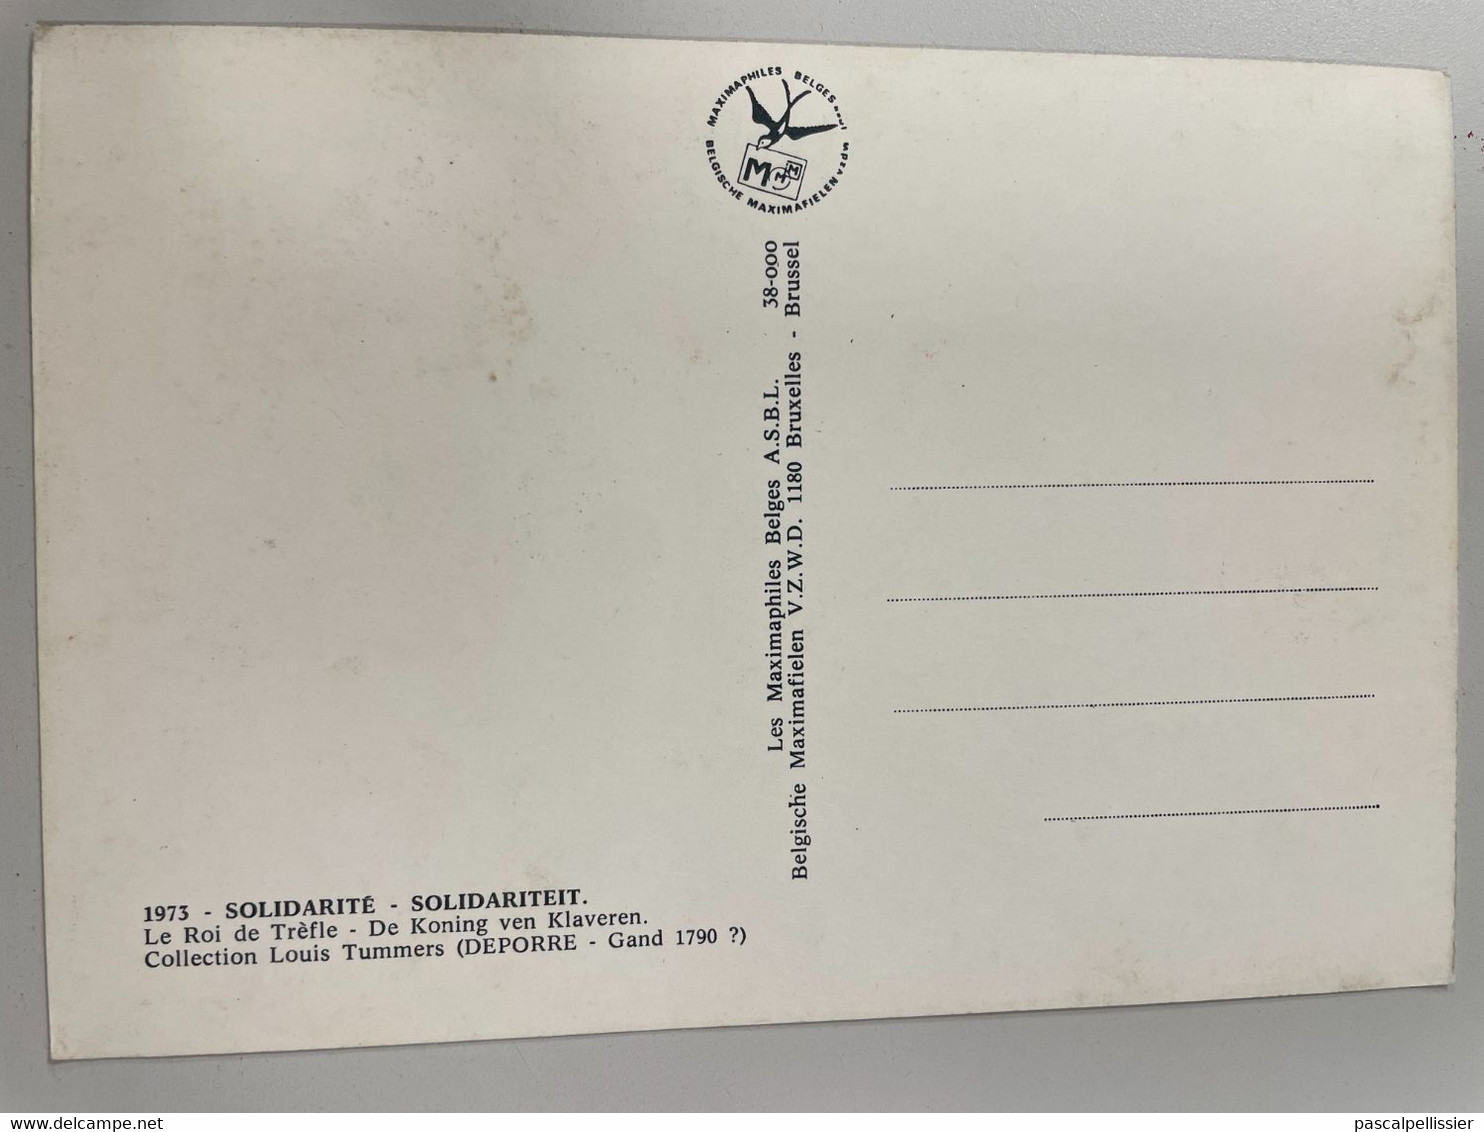 CPM - Lot de 4 Cartes : Dame de Coeur - Valet de Pique - Roi de Trèfle - Cavalier de Carreau - SOLIDARITE 1973